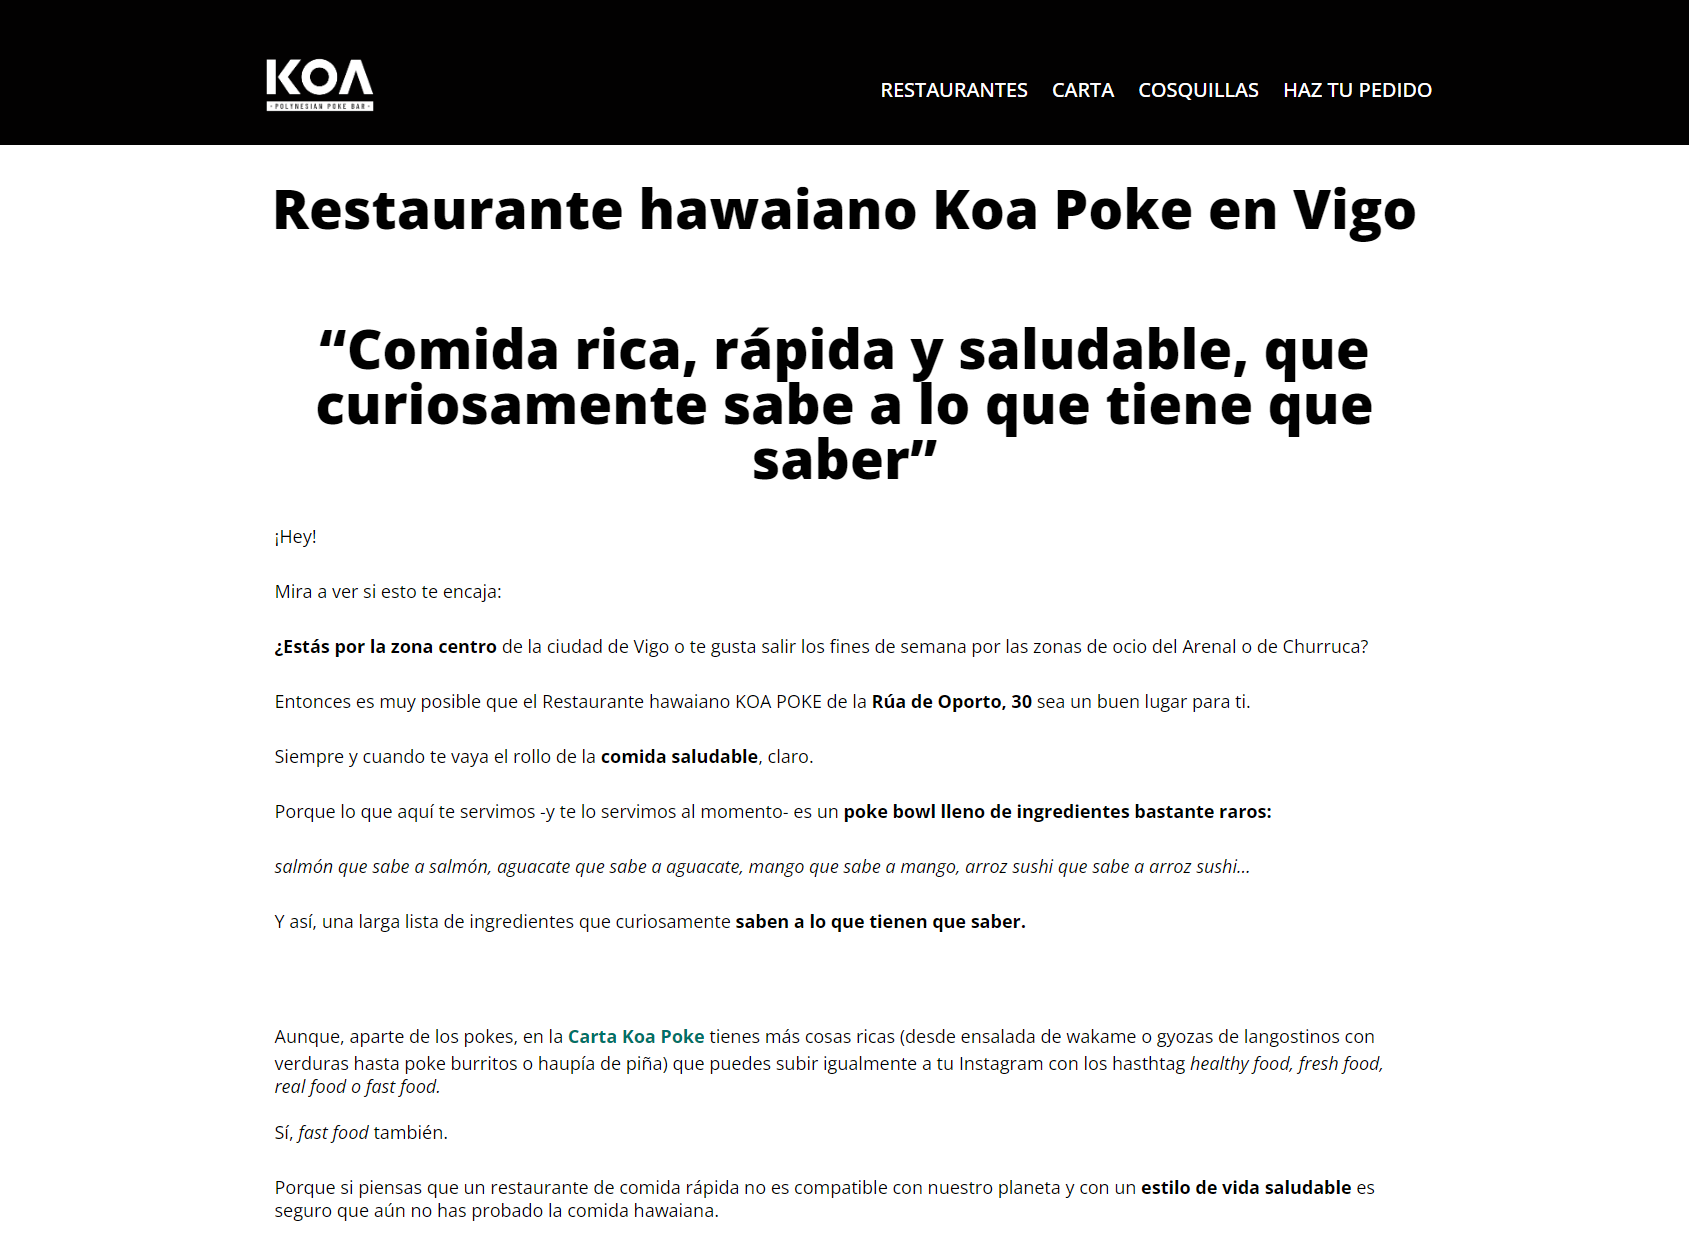 Koa Poke - Vigo